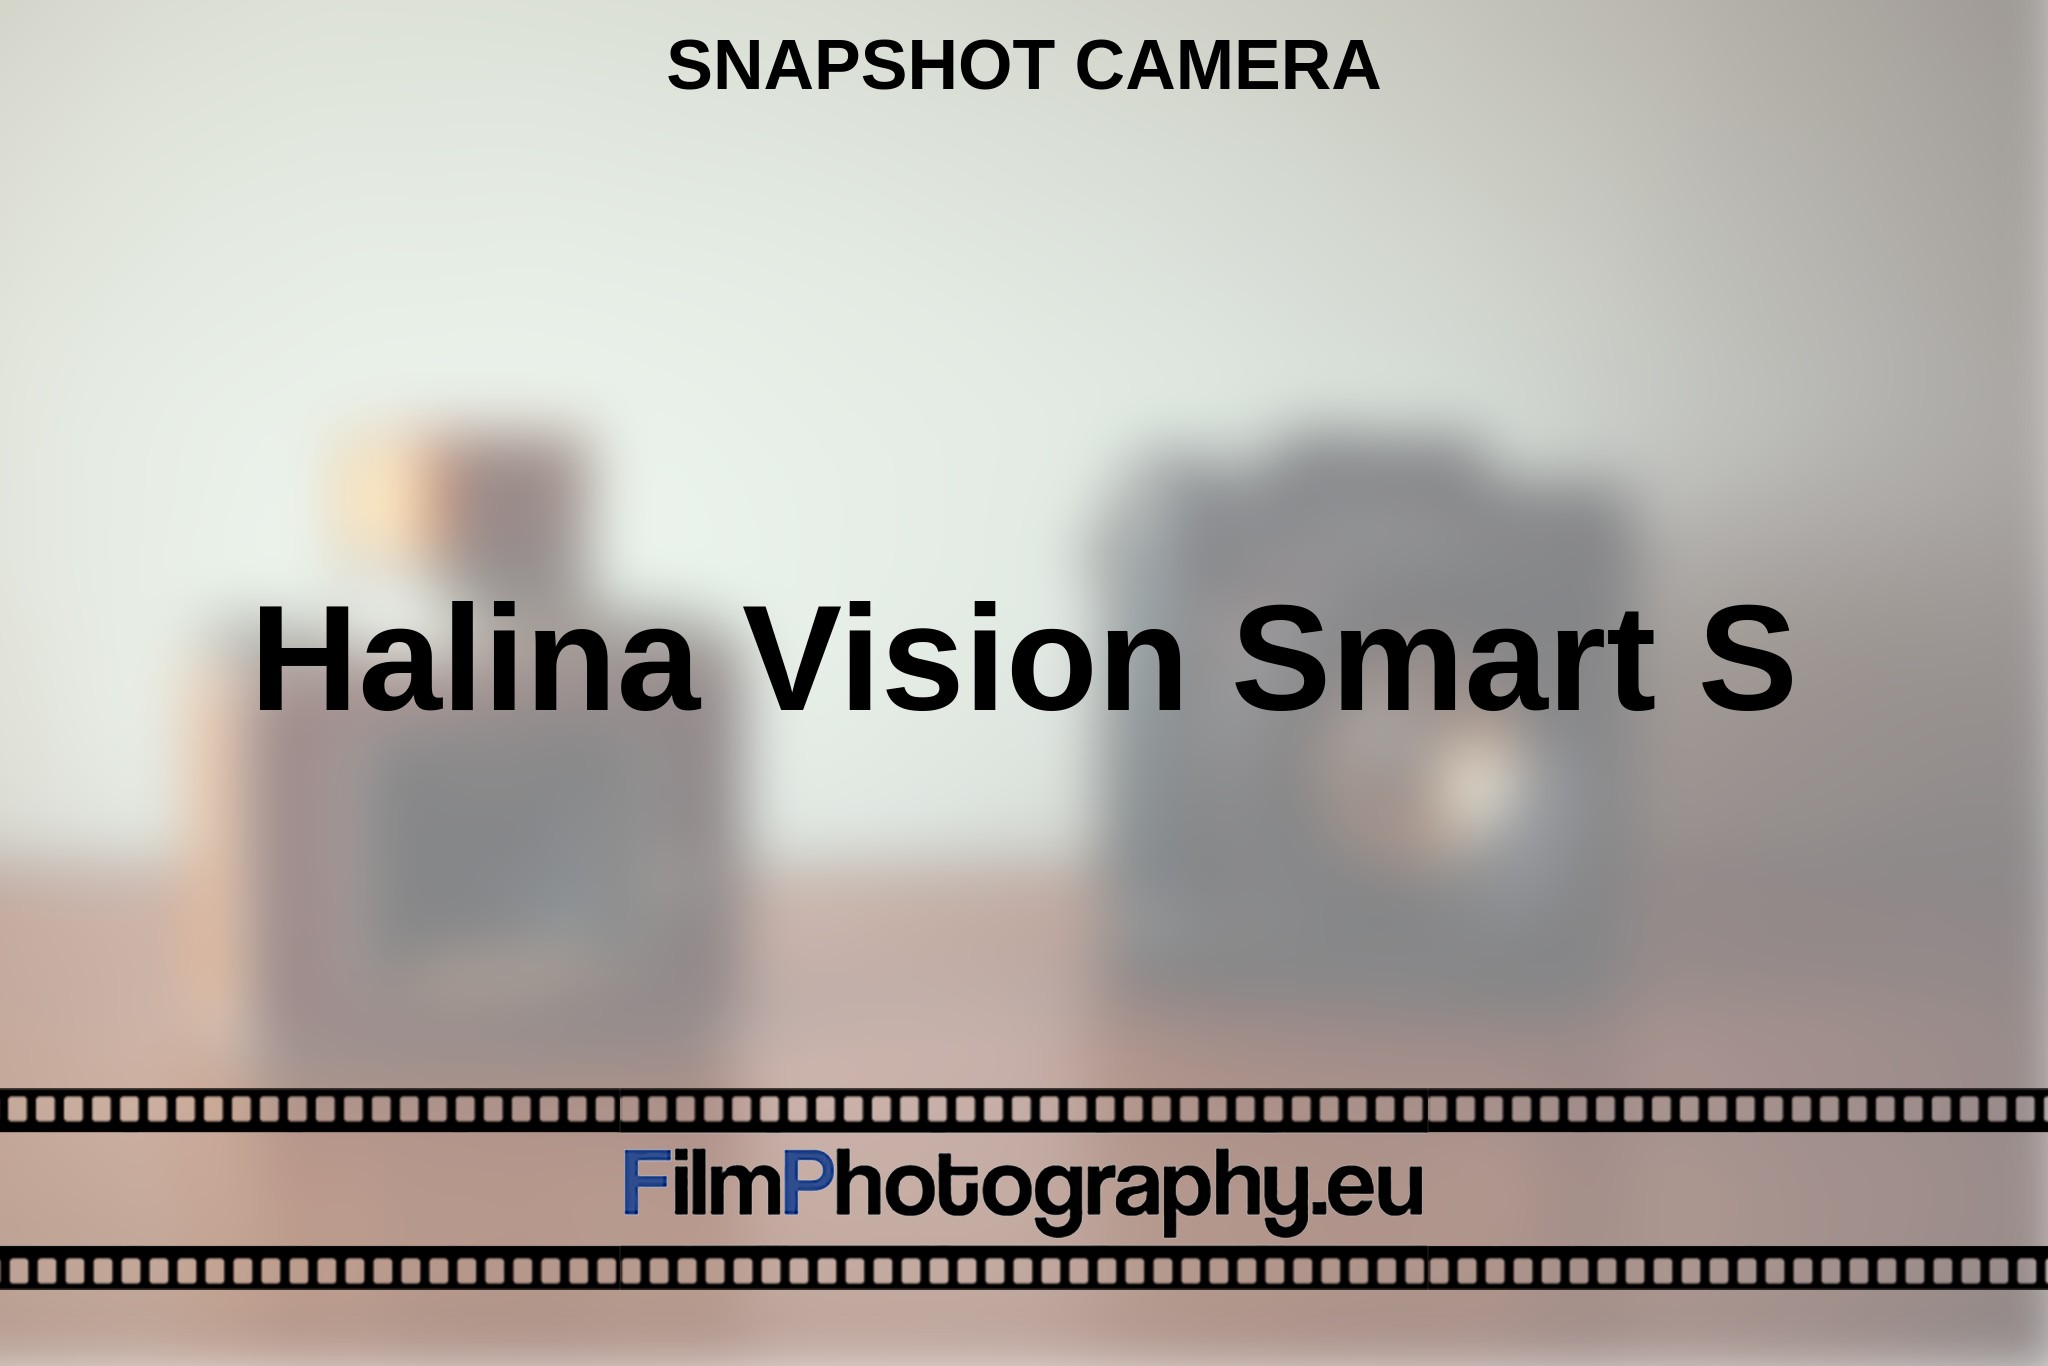 halina-vision-smart-s-snapshot-camera-en-bnv.jpg